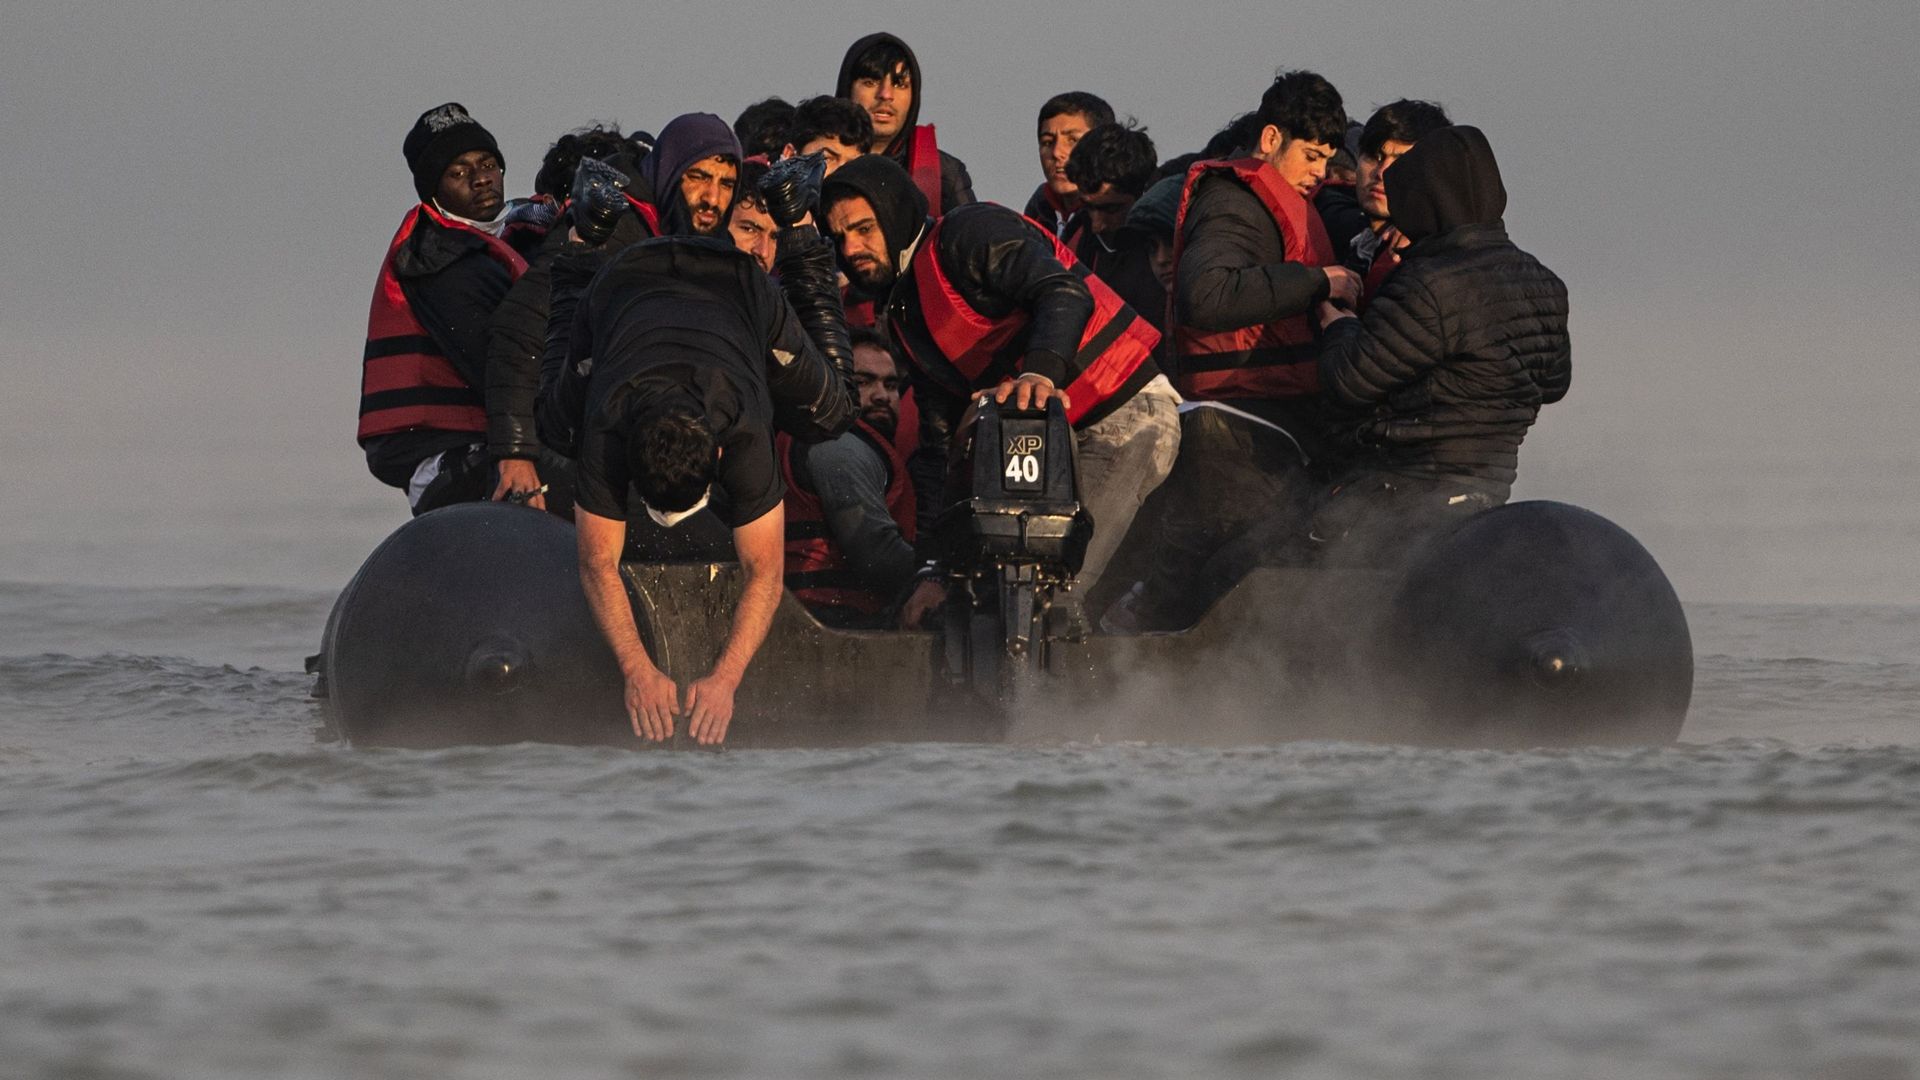 Un passeur saute dans l’eau après avoir embarqué des migrants sur la plage de Gravelines, près de Dunkerque, dans le nord de la France, le 12 octobre 2022, pour tenter de traverser la Manche.